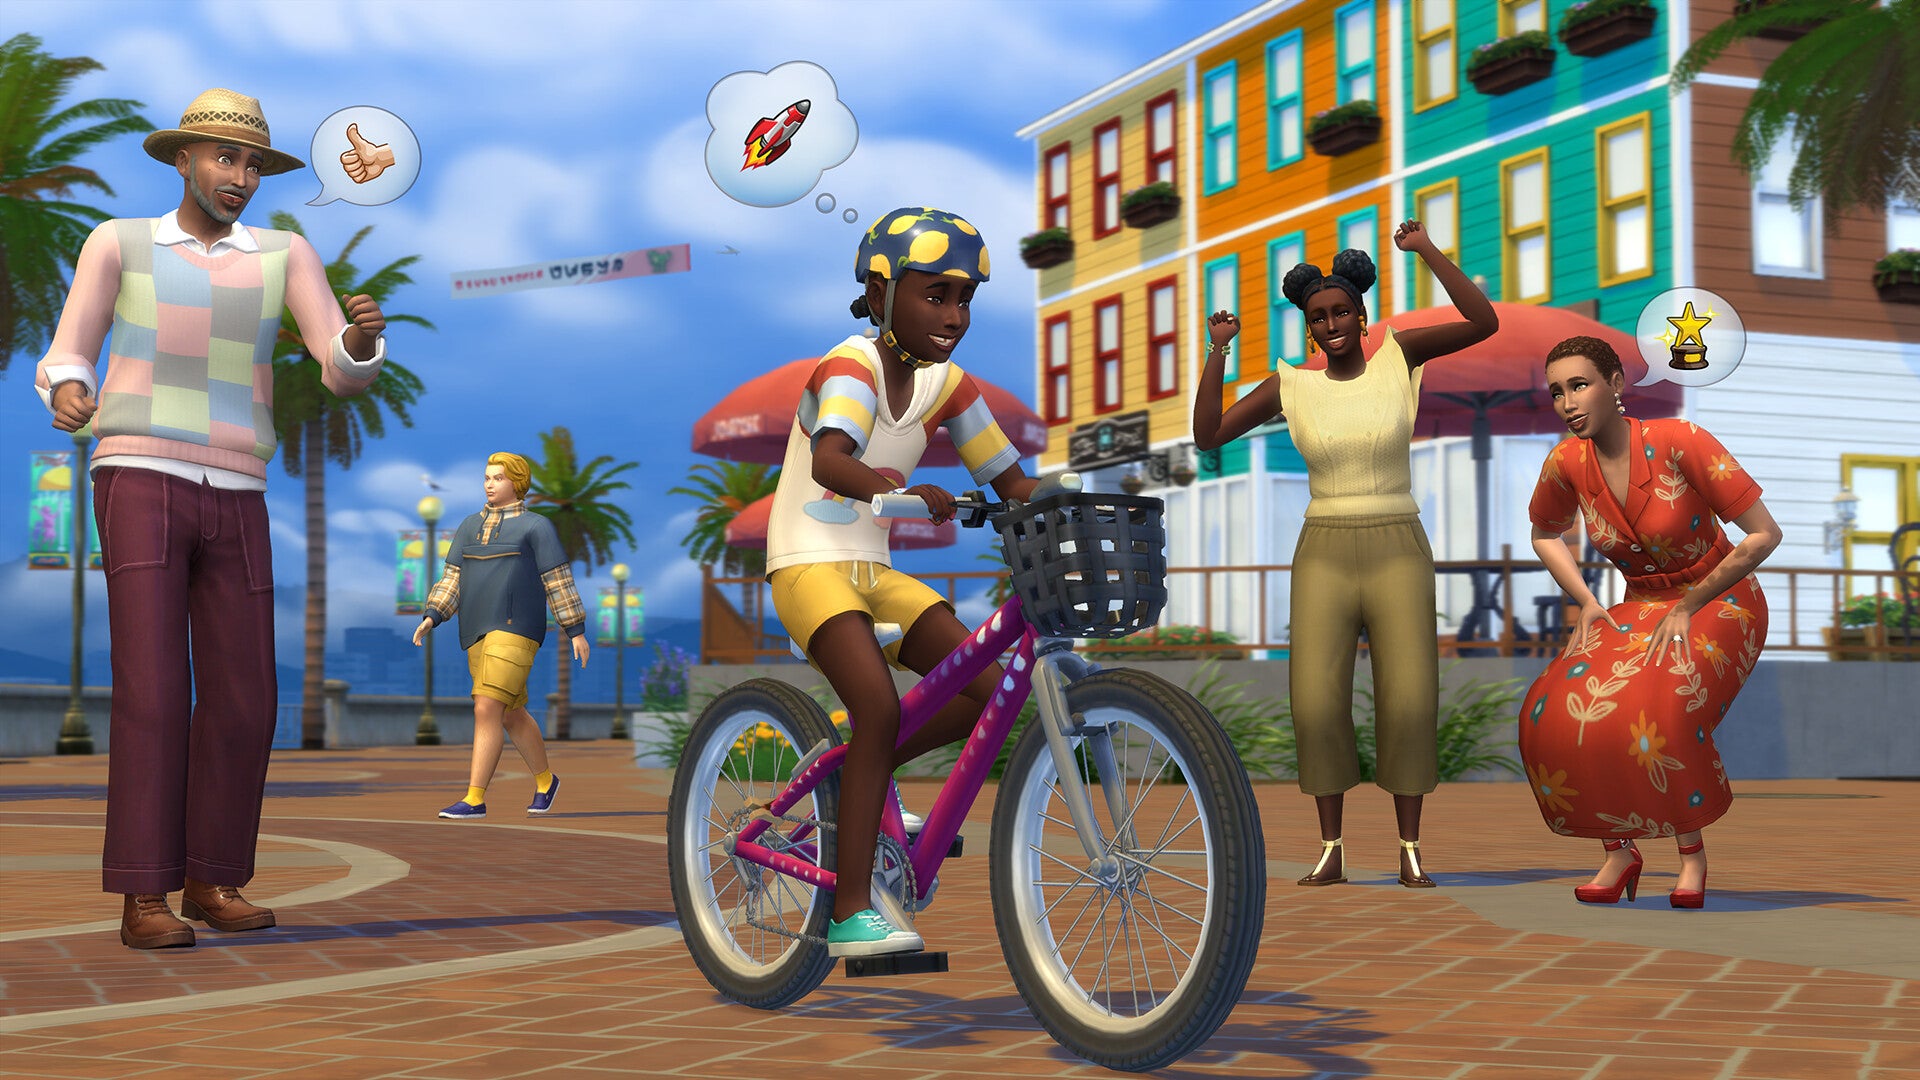 Lihat lebih dekat ekspansi Growing Together The Sims 4 di trailer gameplay baru